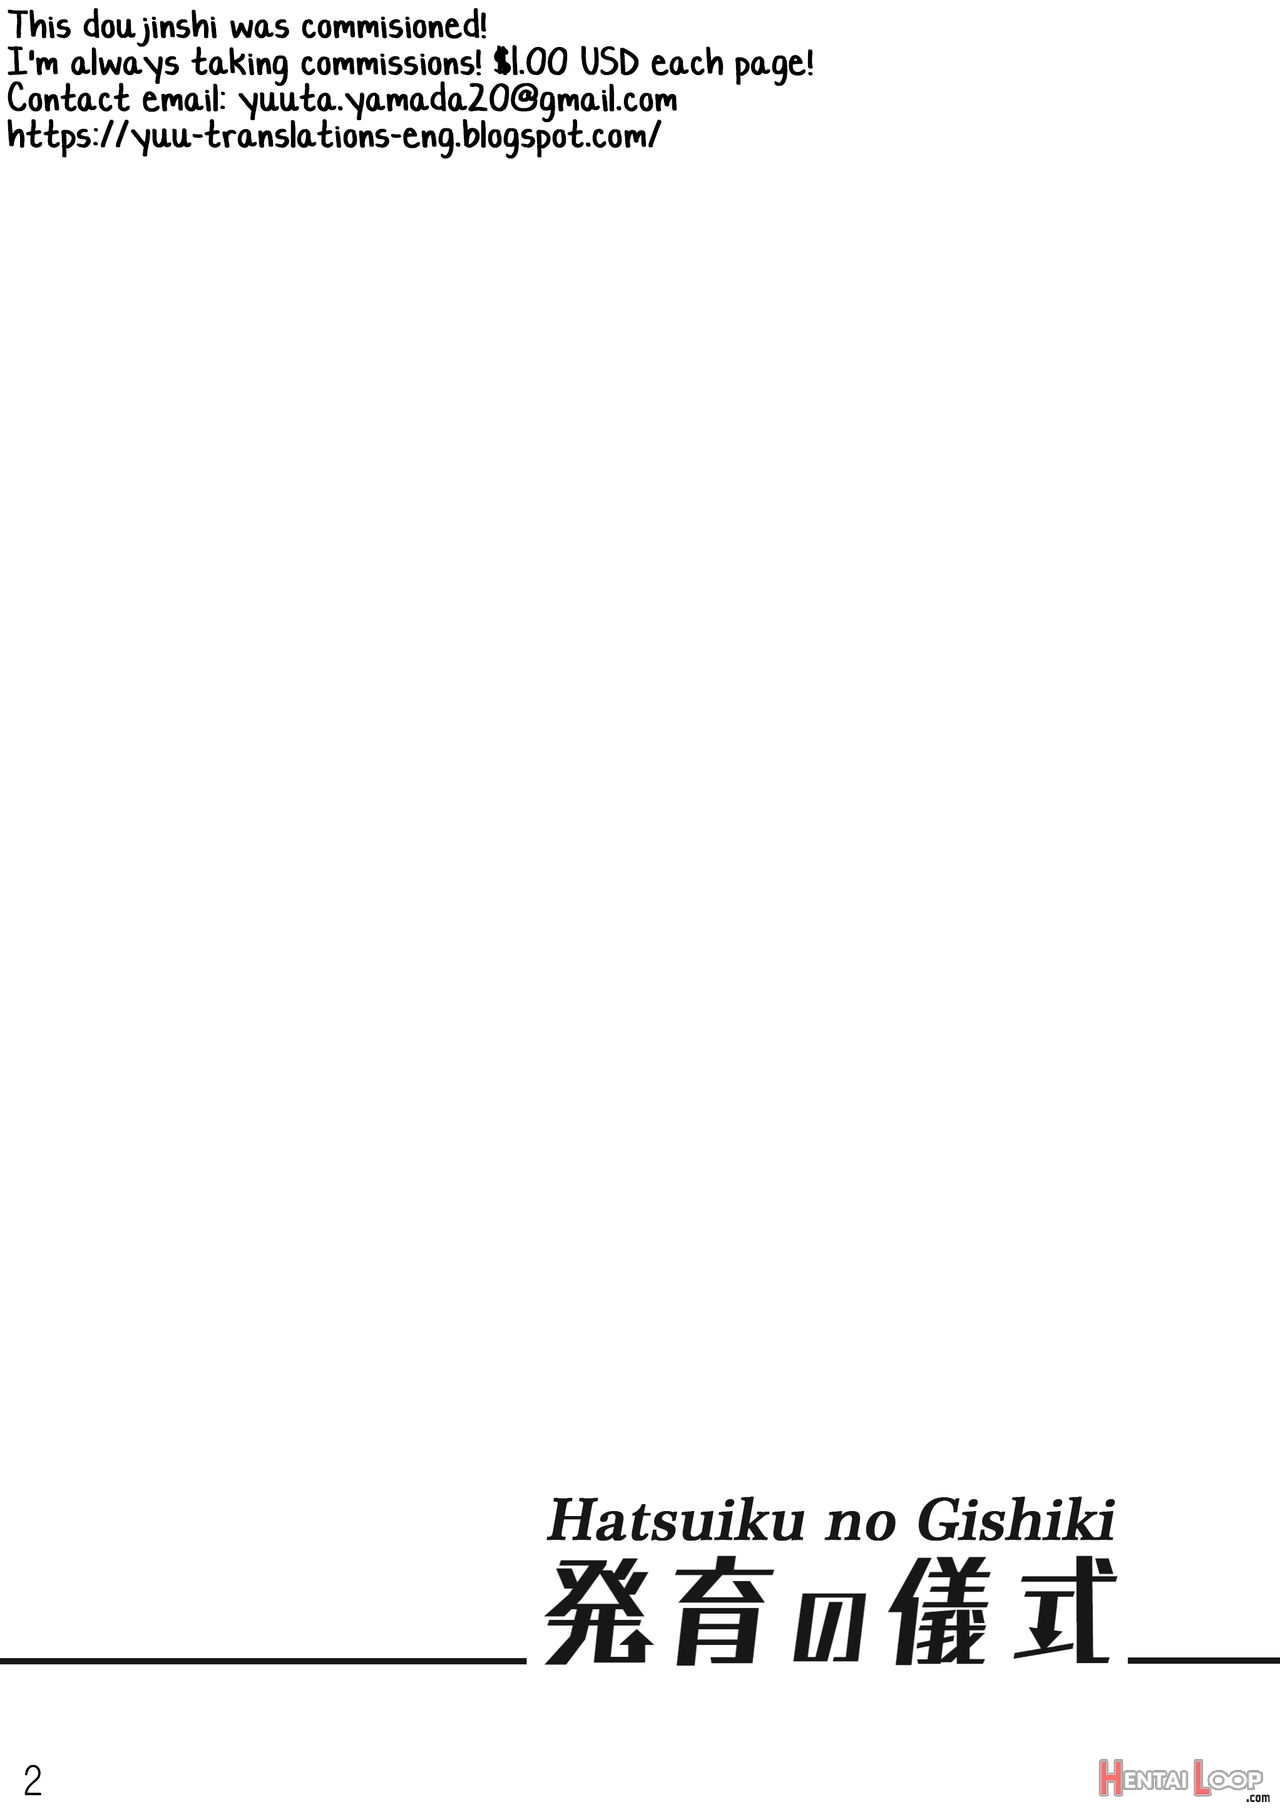 Hatsuiku No Gishiki page 2